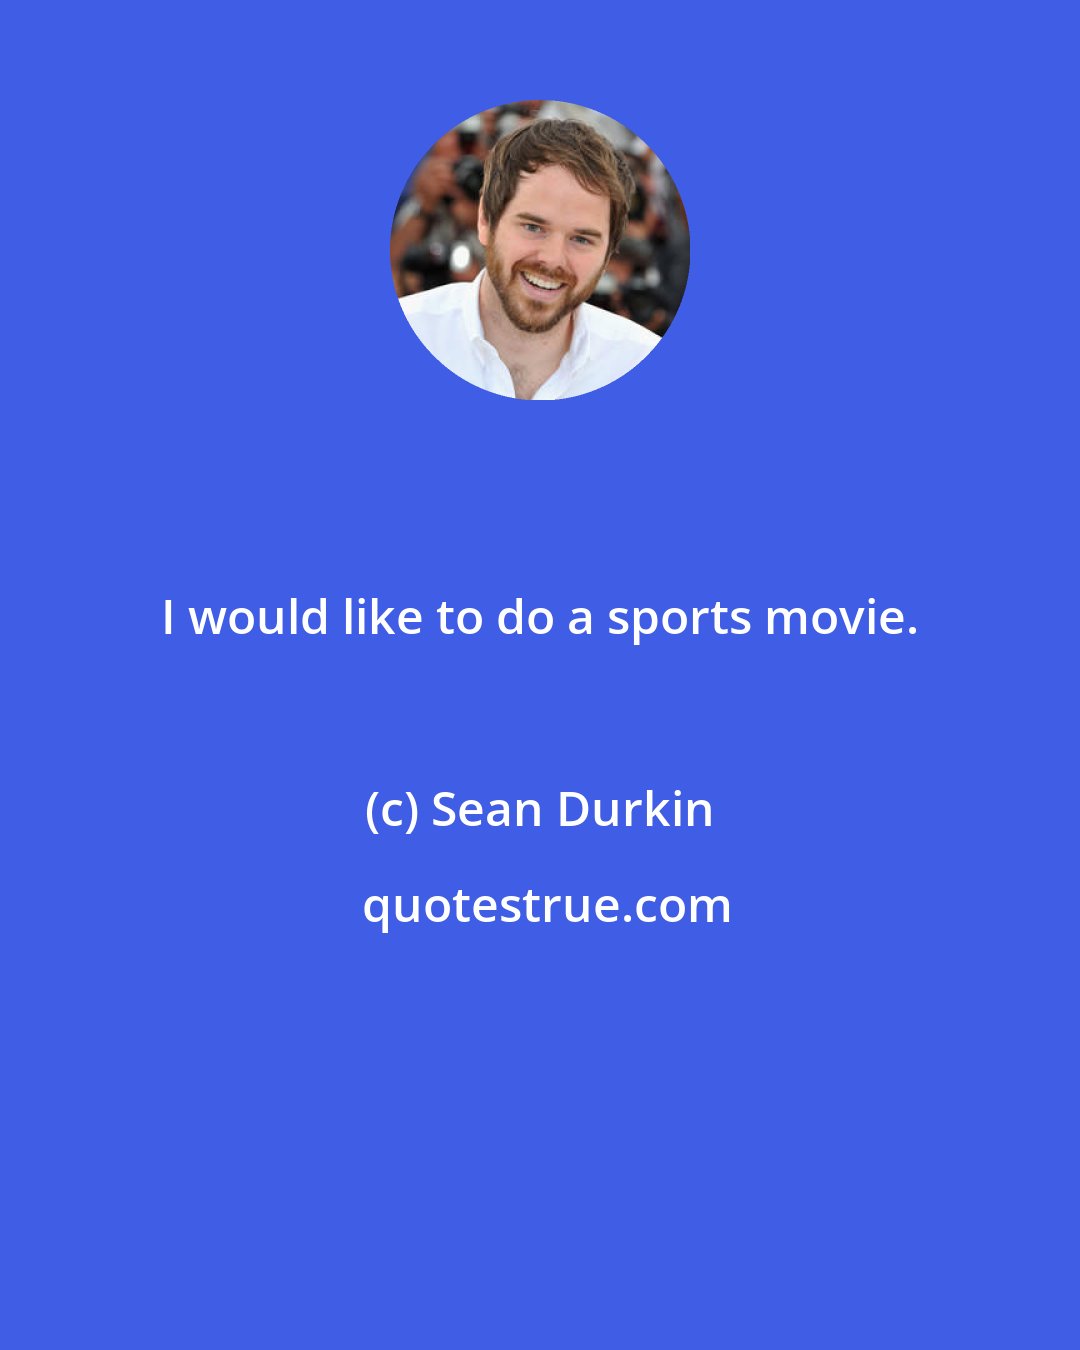 Sean Durkin: I would like to do a sports movie.